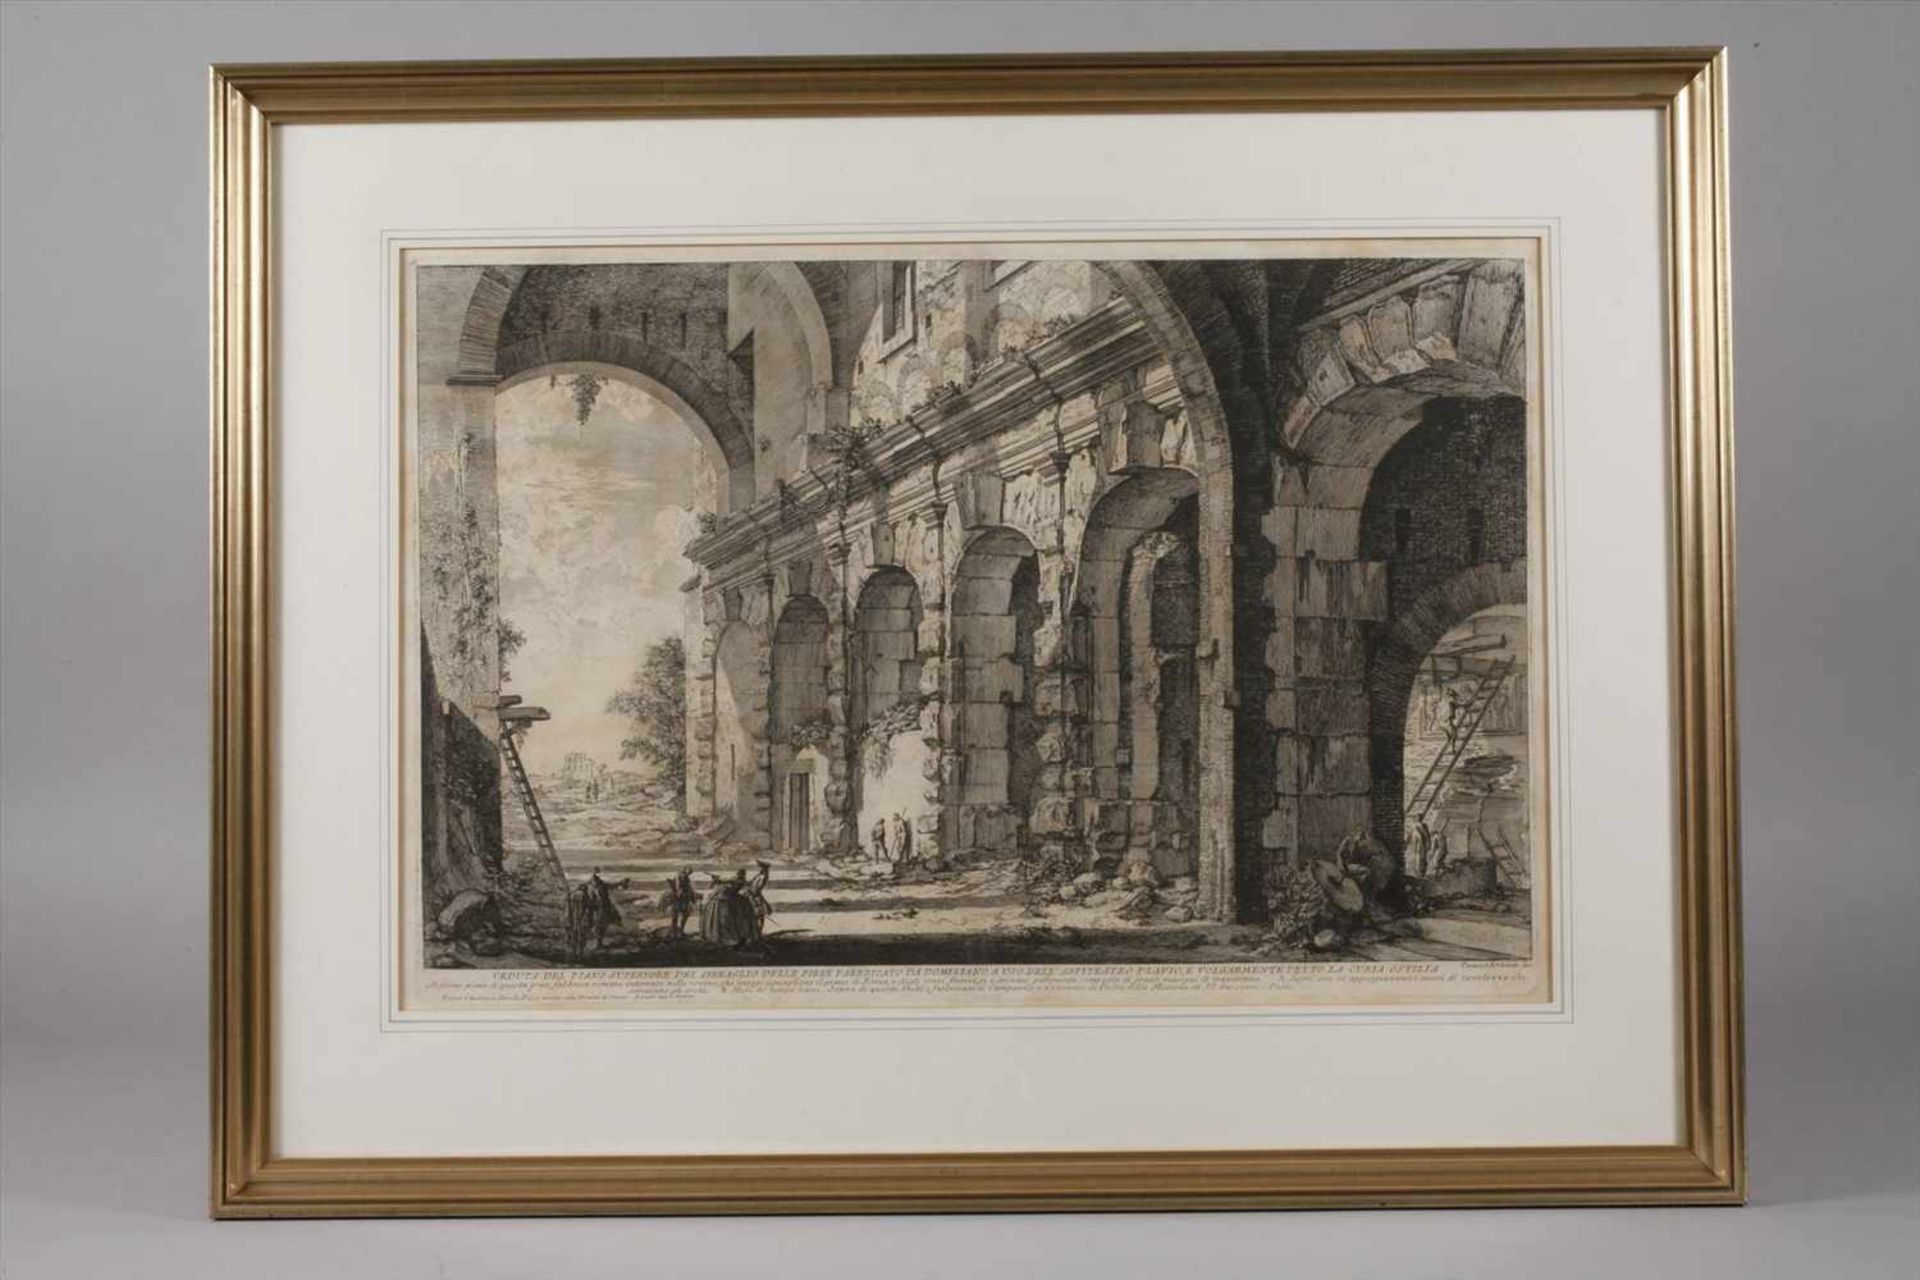 Giovanni Bat. Piranesi, "Veduta Piano Superiore"Blick in einen teils verfallenen hohen Gewölberaum - Bild 4 aus 4